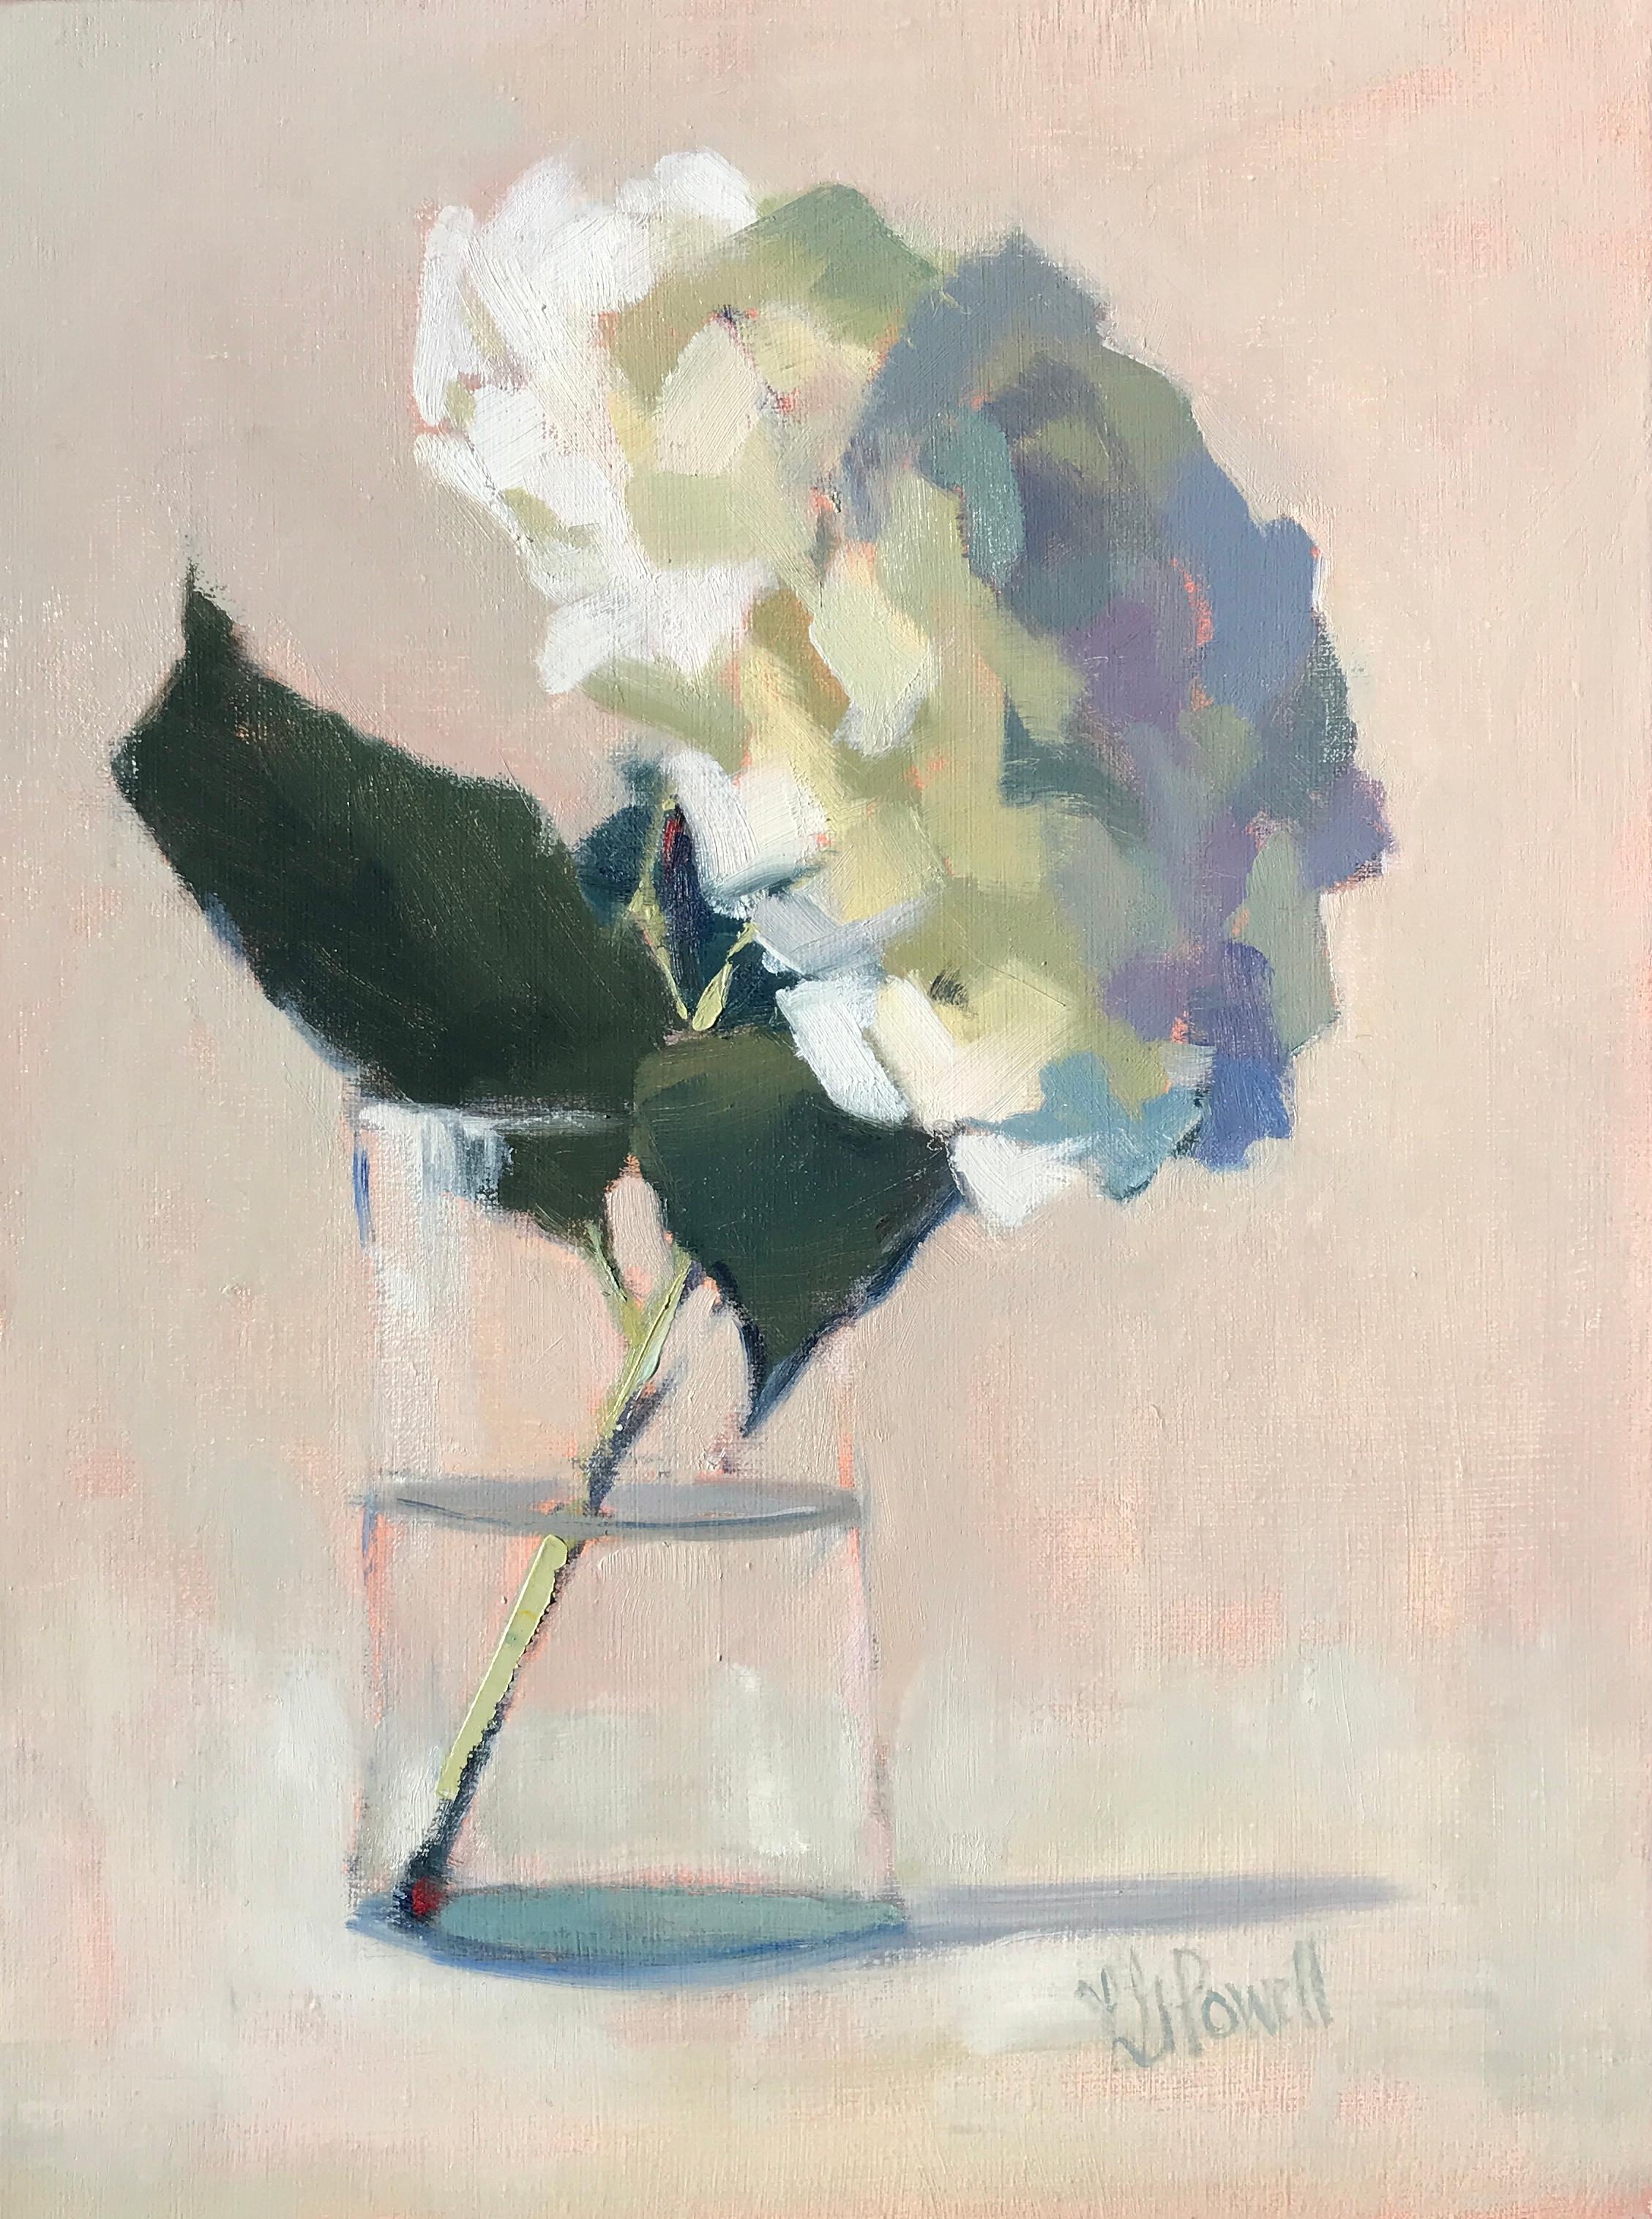 Hydrangea, Looking Forward" ist ein kleines postimpressionistisches Blumenstillleben der amerikanischen Künstlerin Lesley Powell aus dem Jahr 2019. Das Gemälde zeigt eine schöne Hortensie, die sich an die Innenseite eines einfachen Wasserglases